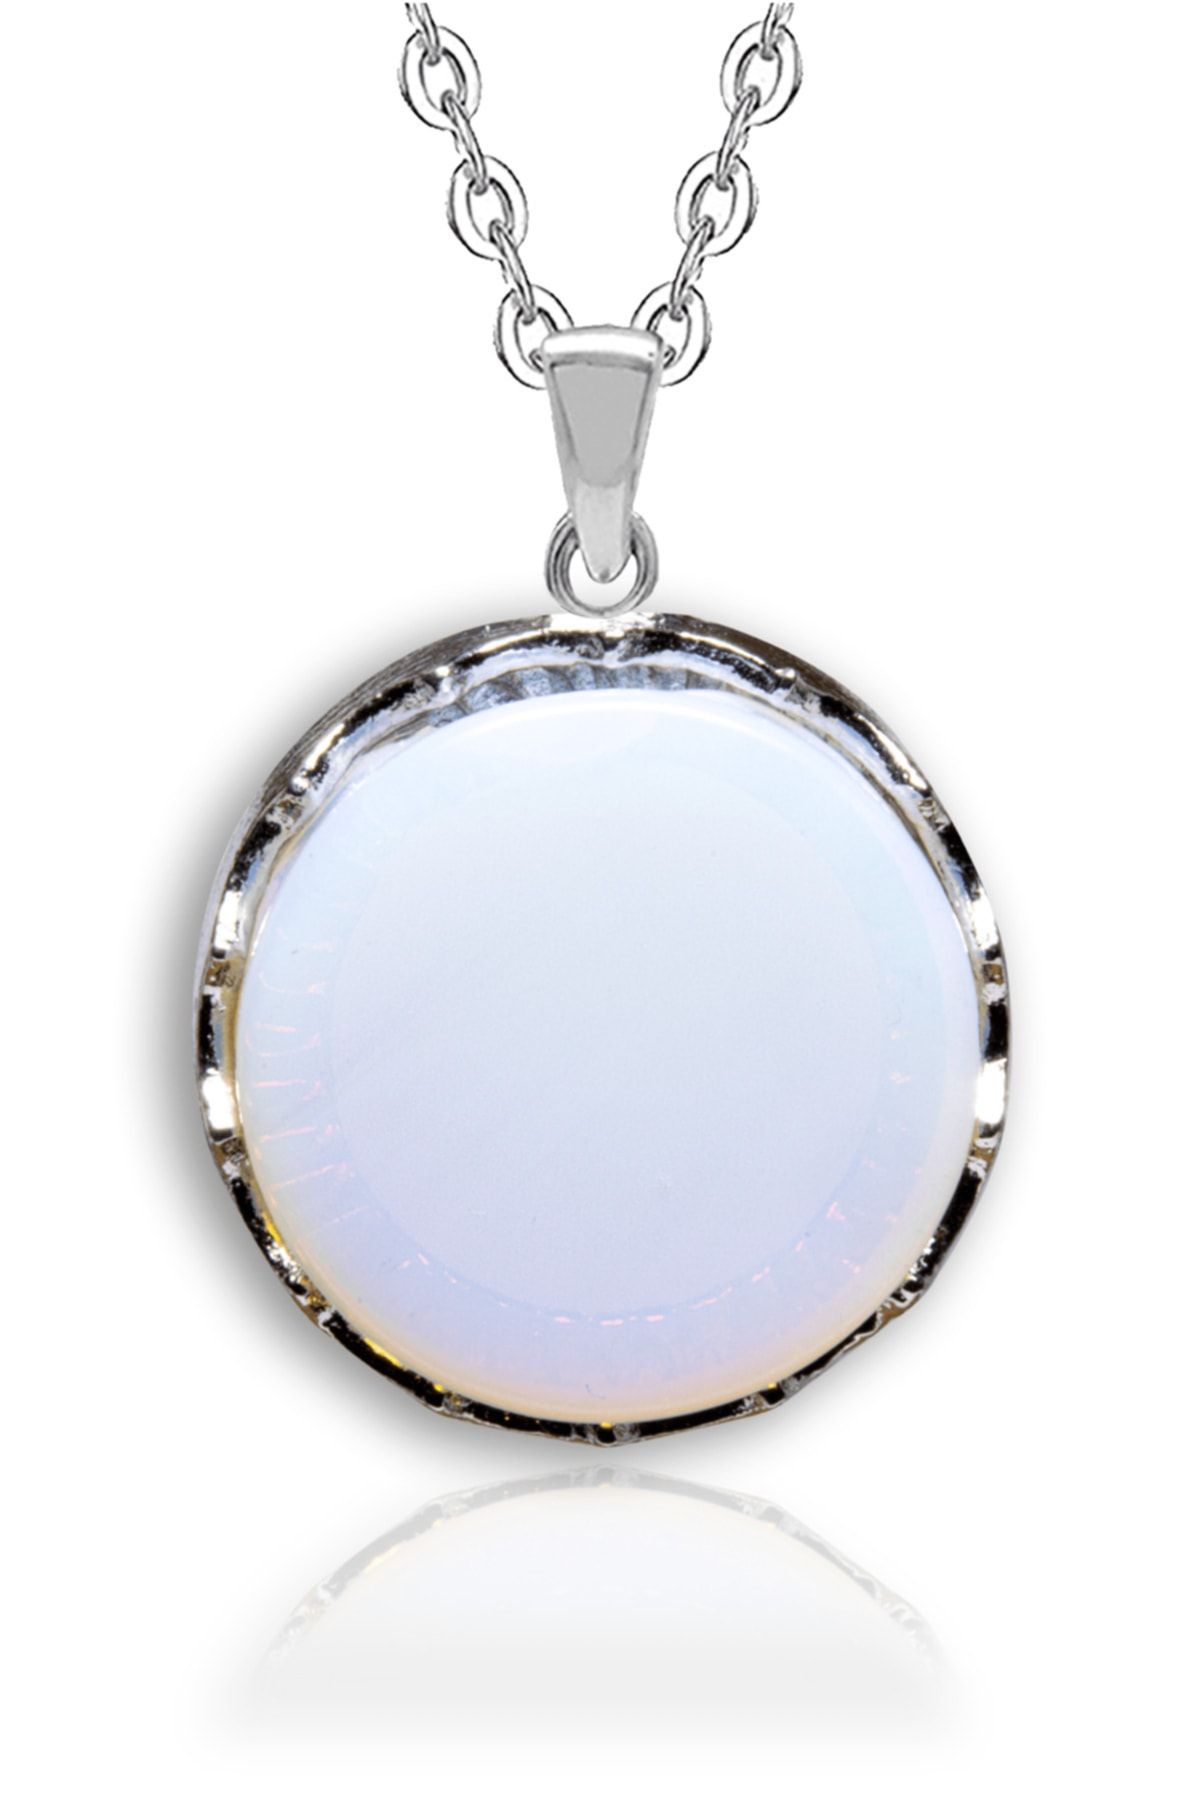 Tesbih Atölyesi Sertifikalı Doğal Opal Ay Taşı Doğal Taş Kolye